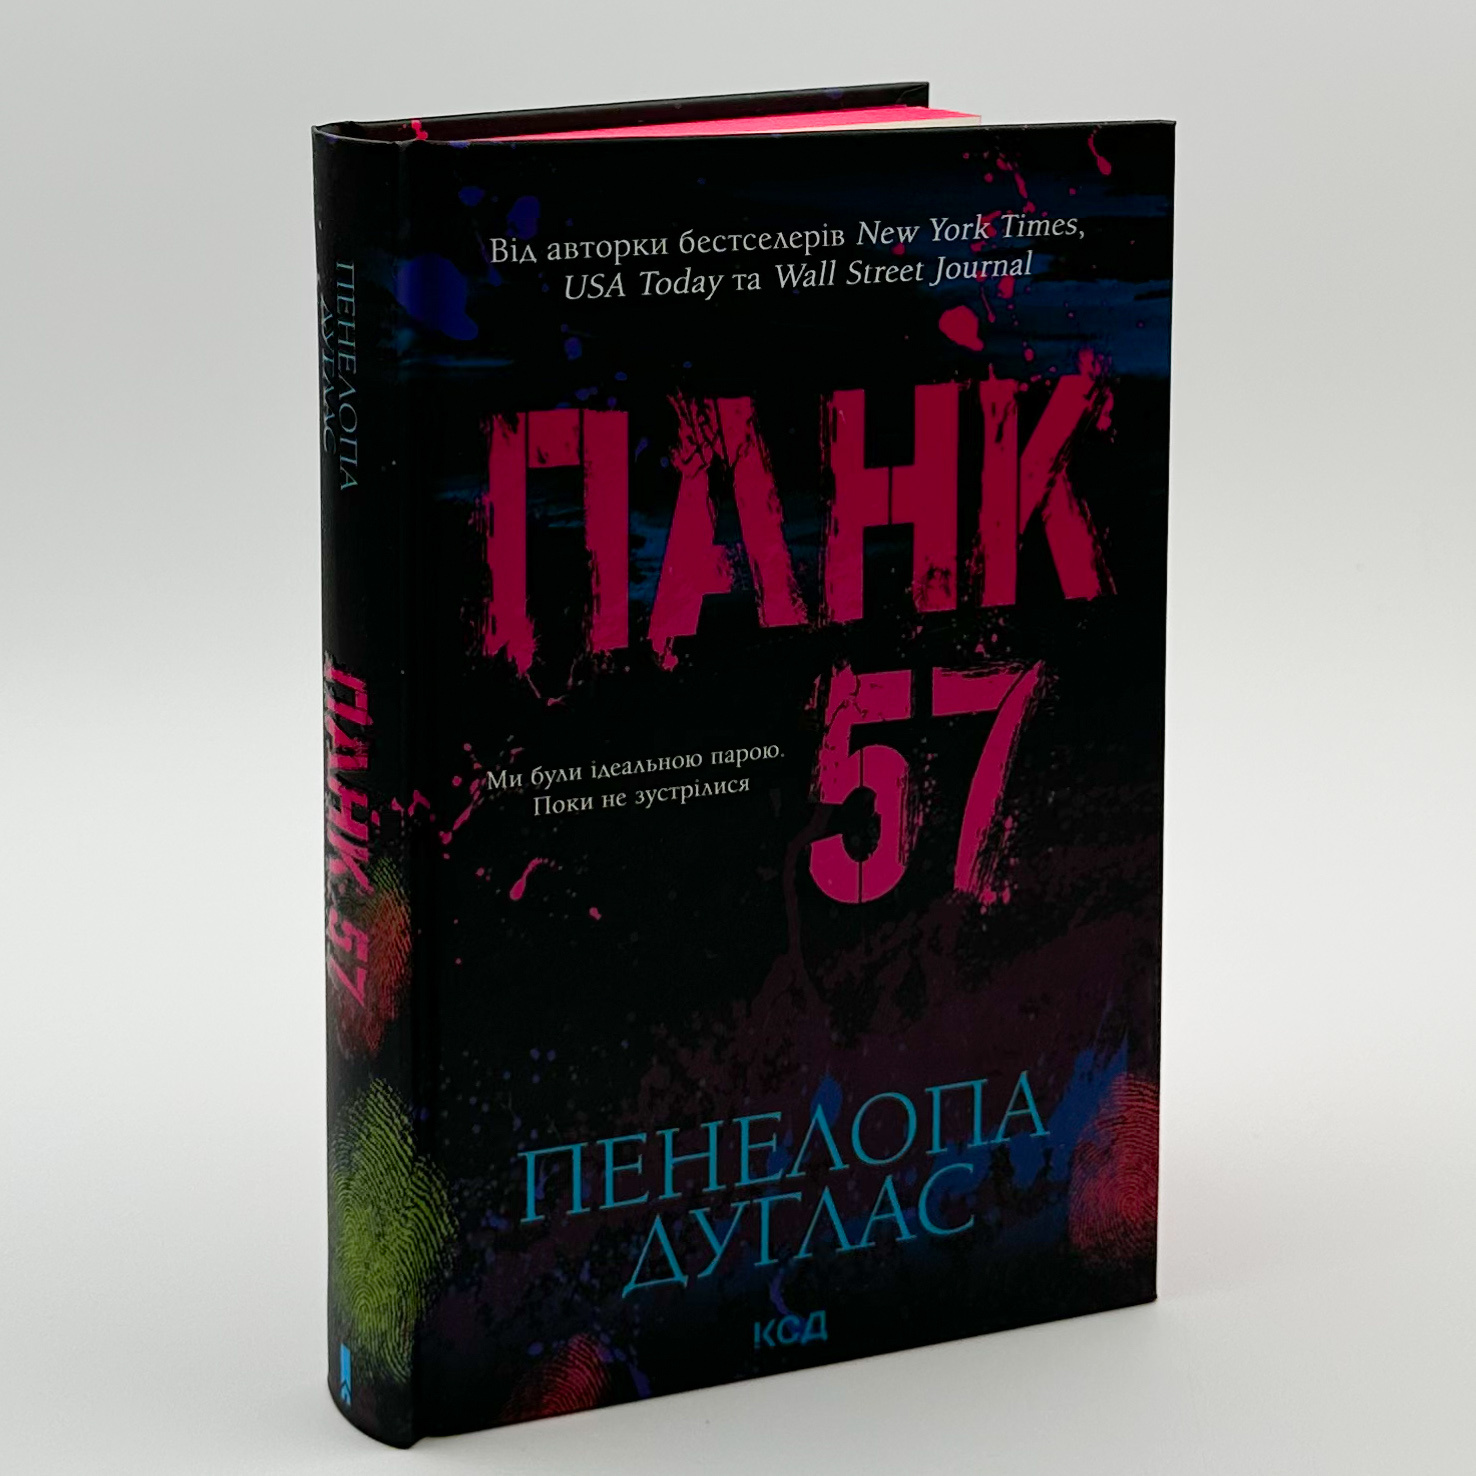 Панк 57. Автор — Пенелопа Дуглас. 